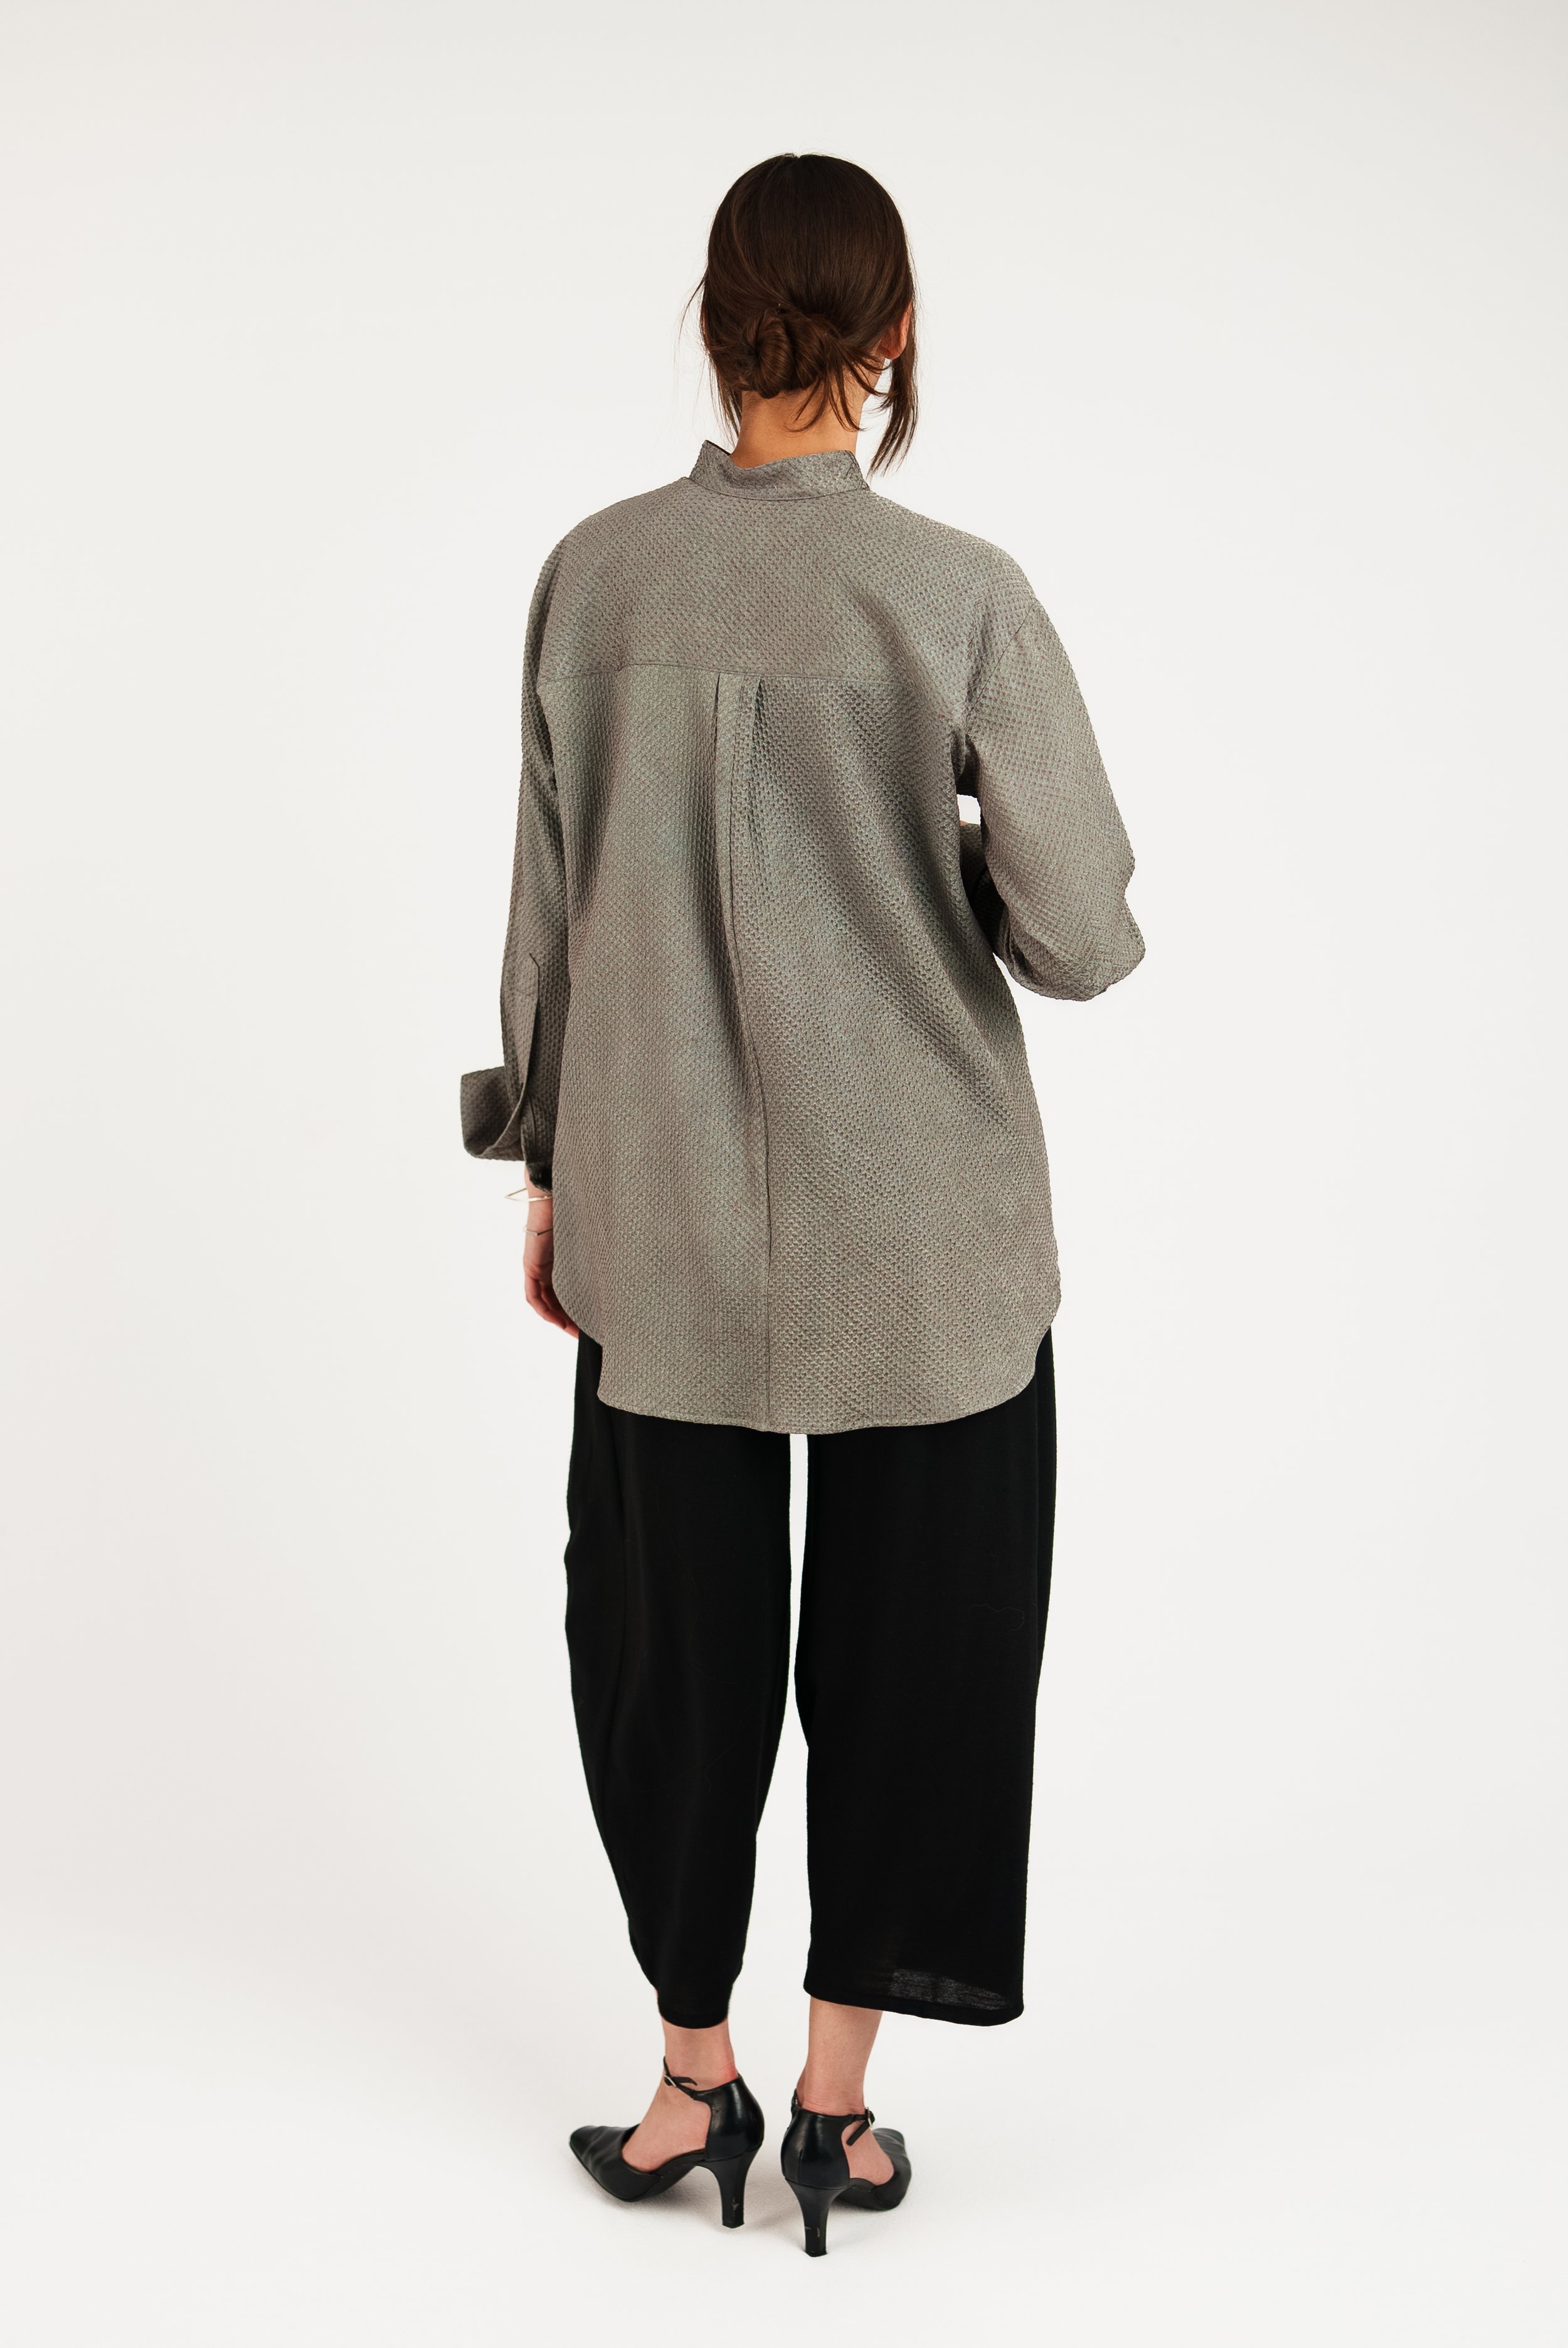 Madison Shirt in Vintage Japanese Silk Shibori — ASIATICA